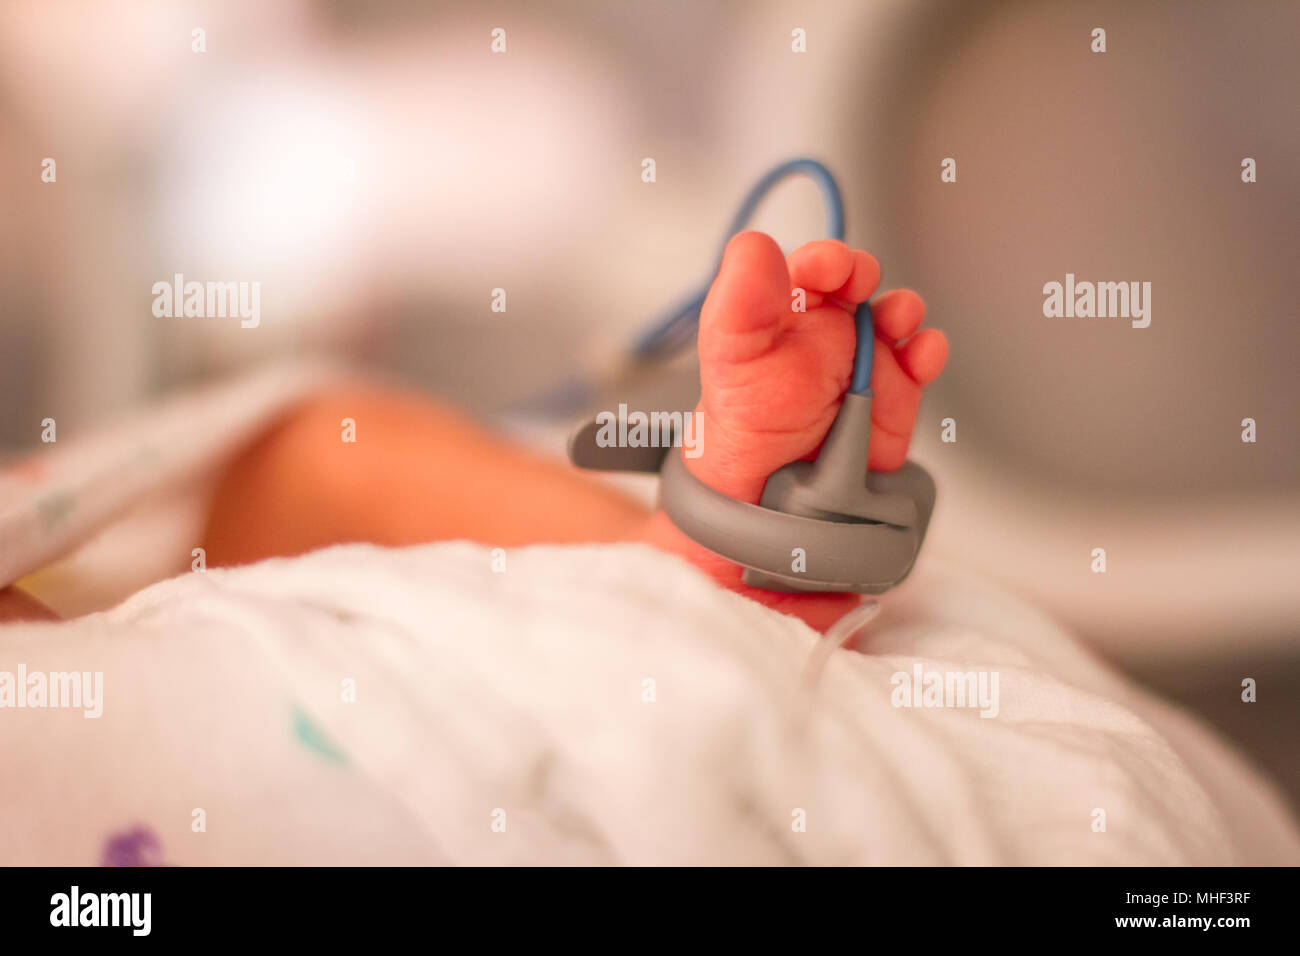 Recién nacido en la unidad de cuidados intensivos de un hospital de ICU Foto de stock